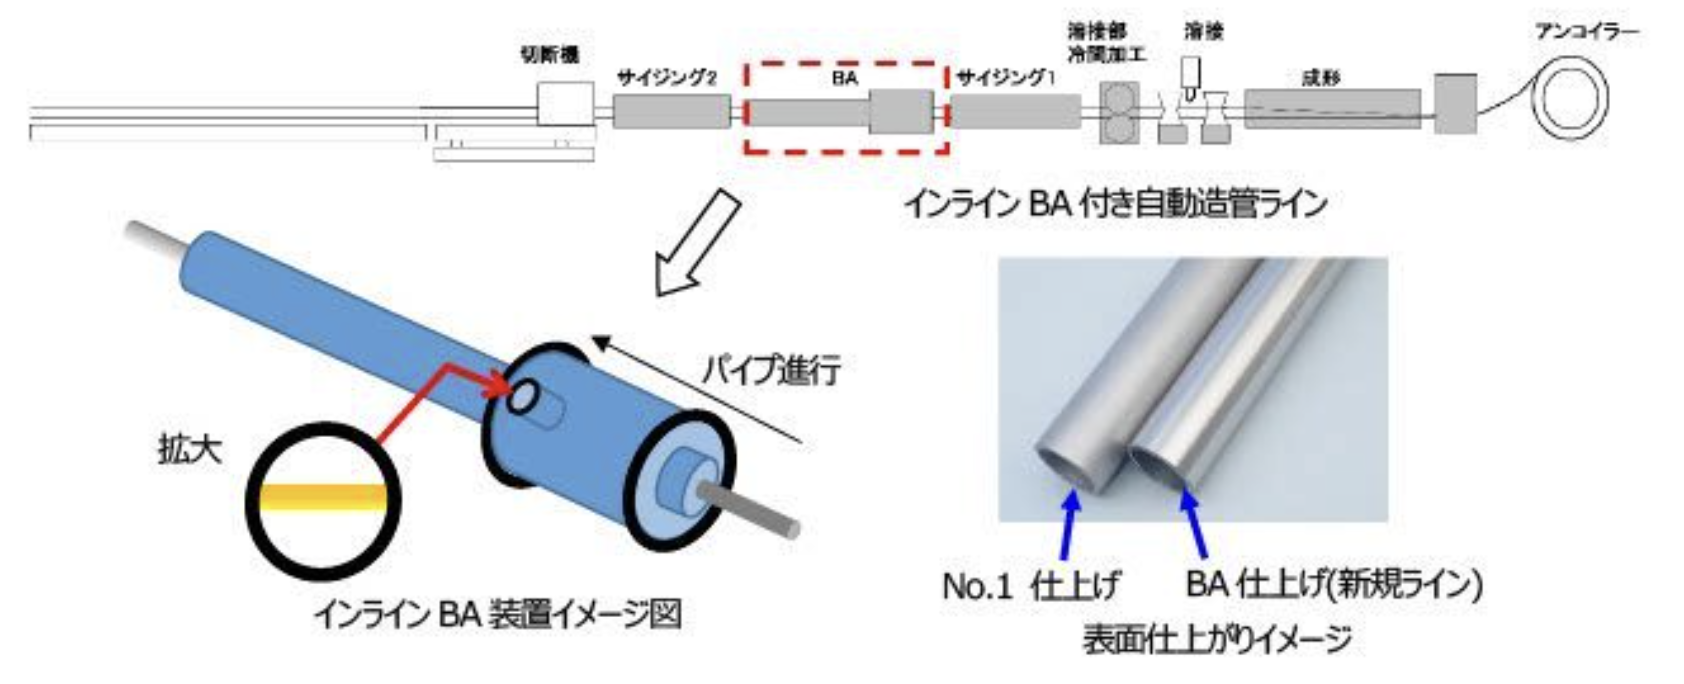 ナストーア、神奈川県茅ヶ崎市の茅ケ崎製造所でインラインBA付き自動造管ライン導入